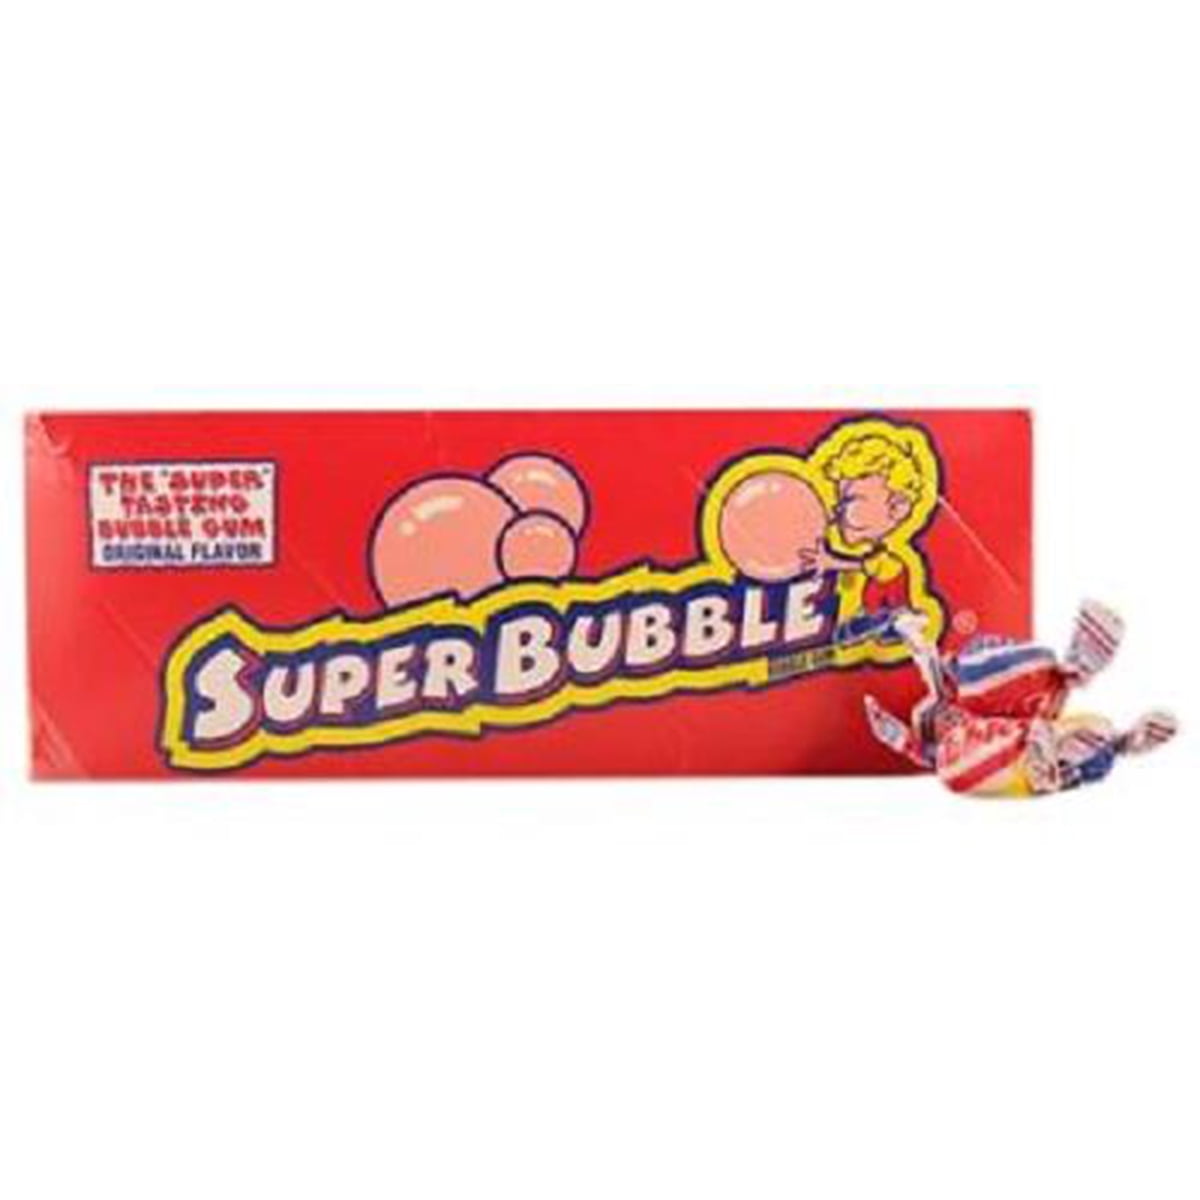 Product Of Super Bubble, Bubble Gum Original, Count 300 - Gum / Grab Variet...